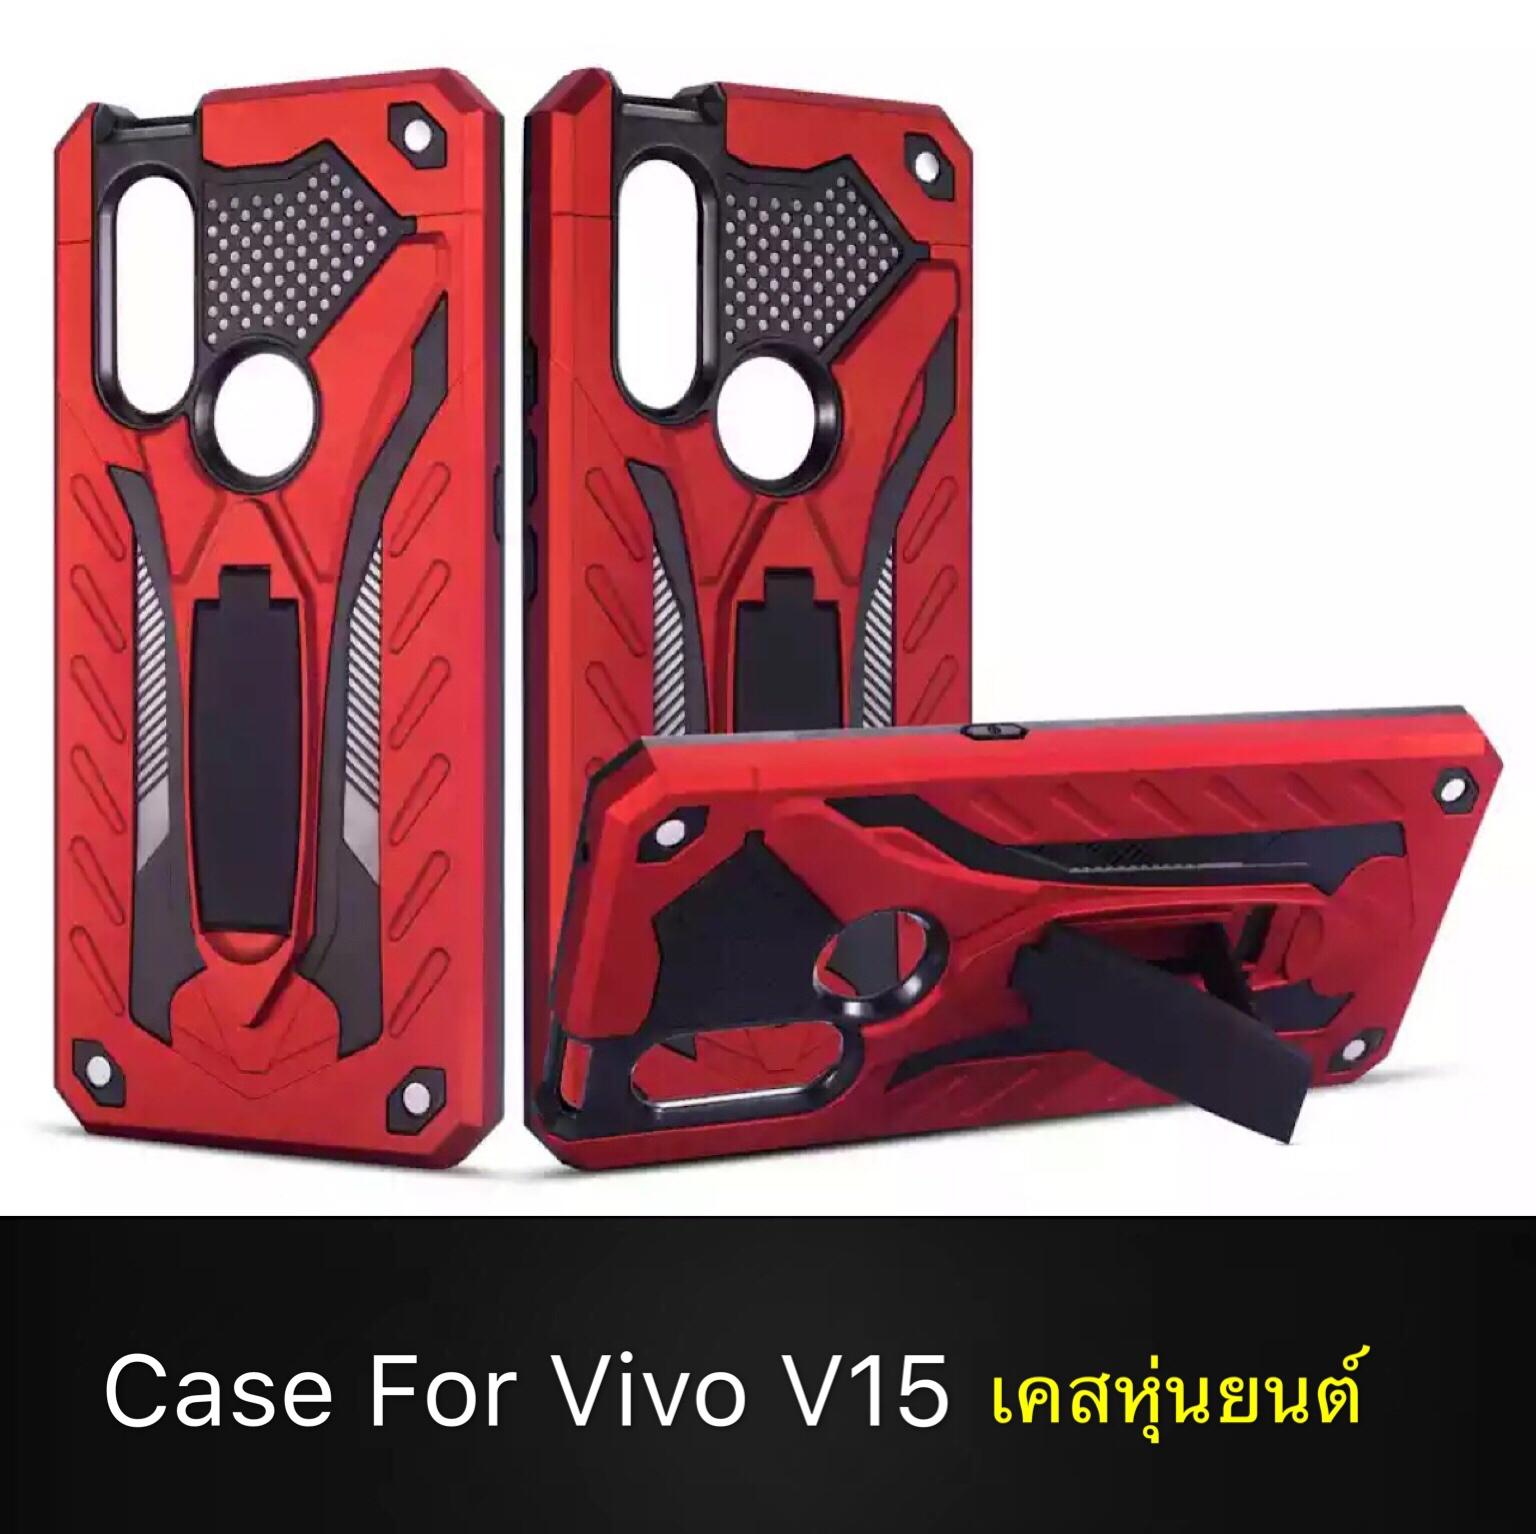 [รับประกันสินค้า] Case Vivo V15 เคสวีโว่ V15 Robot case เคสหุ่นยนต์ เคส vivo v15 เคสไฮบริด มีขาตั้ง เคสกันกระแทก TPU CASE สินค้าใหม่